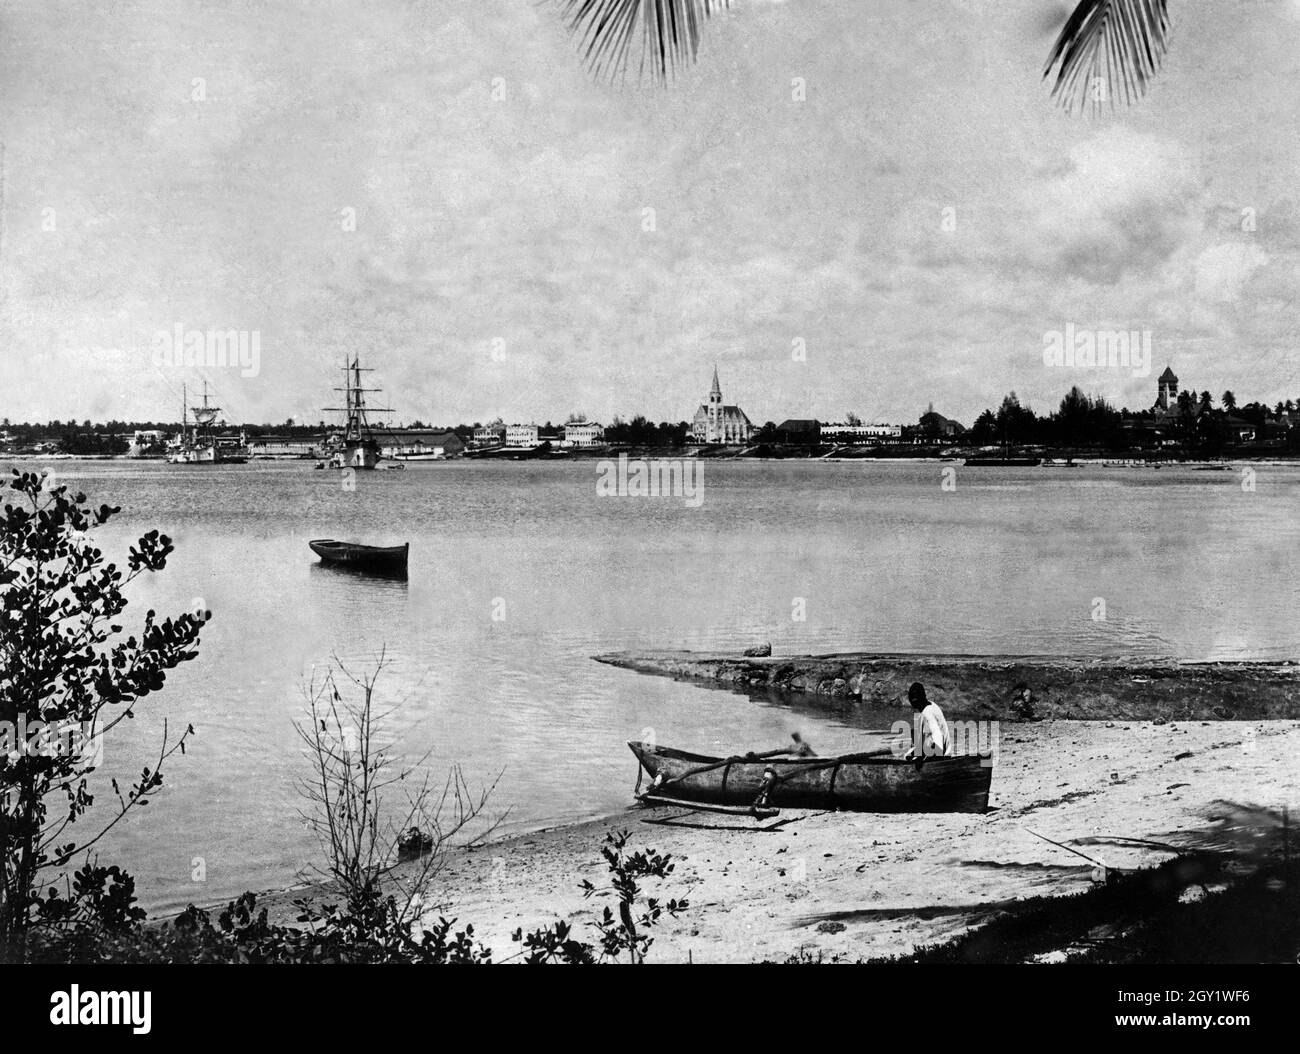 Blick auf die Bucht von Dar es Salam, Deutsch-Ostafrika 1900er Jahre. Vue sur la baie de Dar es Salam, Afrique de l'est allemande des années 1900. Banque D'Images